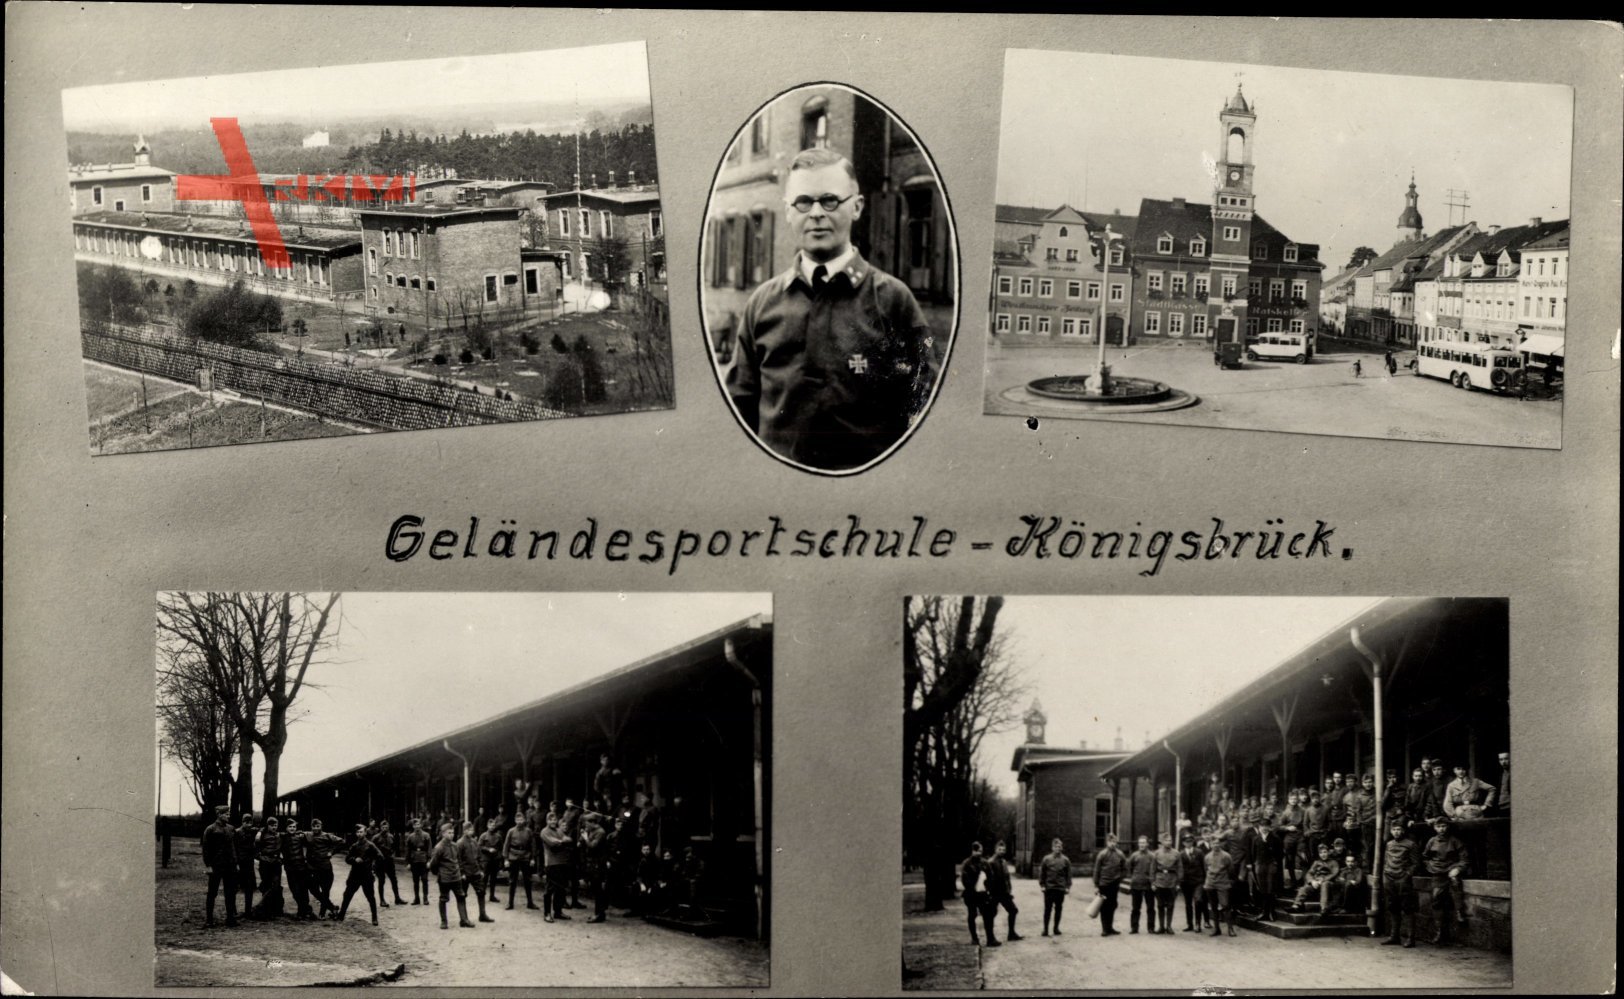 Königsbrück in der Oberlausitz, Geländesportschule, Reichswehrsoldaten, Ausbilder mit EK I.